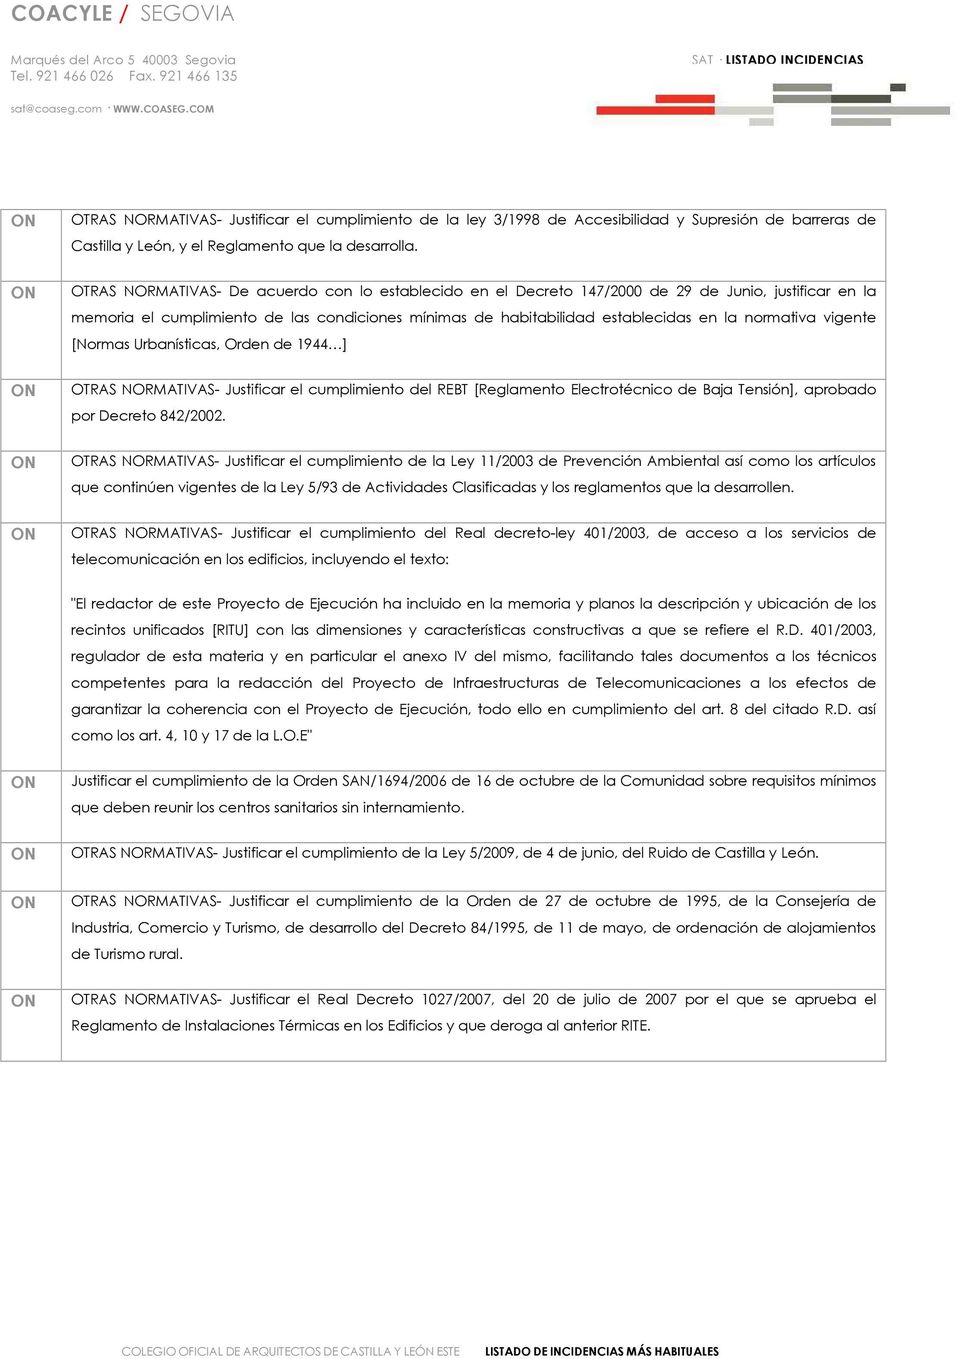 ON OTRS NORMTIVS- De acuerdo con lo establecido en el Decreto 147/2000 de 29 de Junio, justificar en la memoria el cumplimiento de las condiciones mínimas de habitabilidad establecidas en la